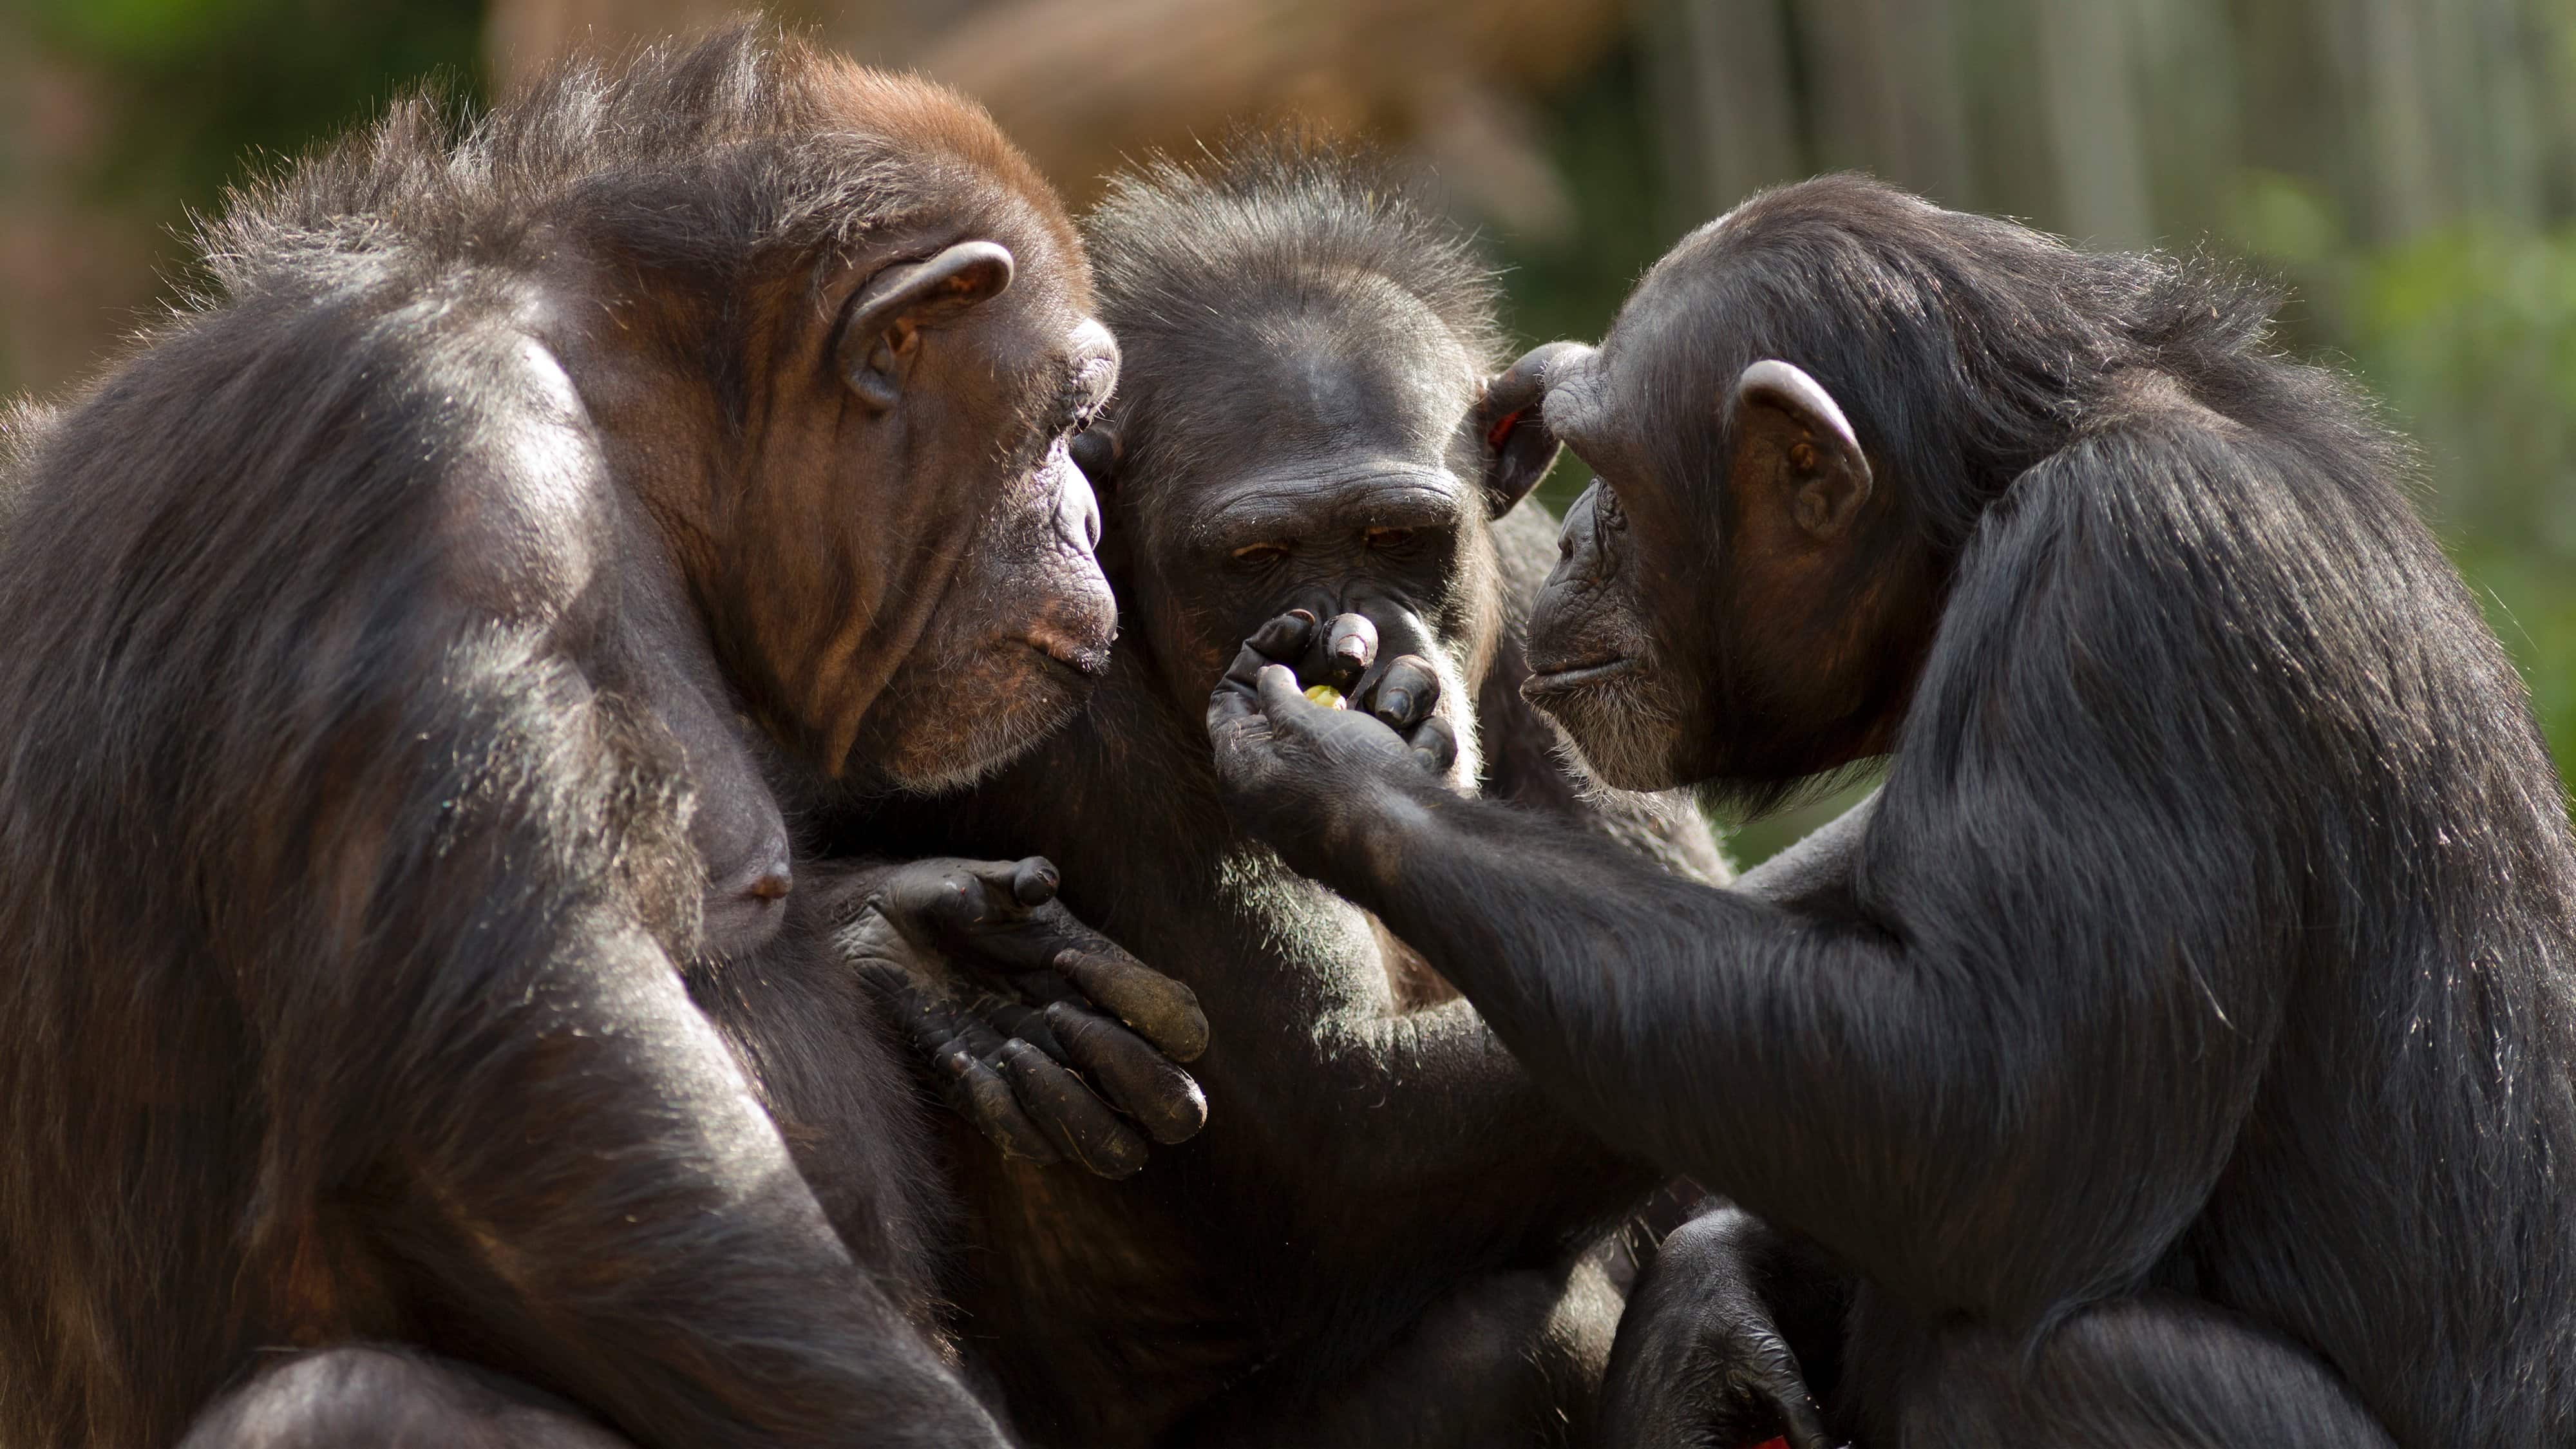 Общение в мире животных. Коммуникация животных. Обезьяны. Социальное поведение животных. Шимпанзе.